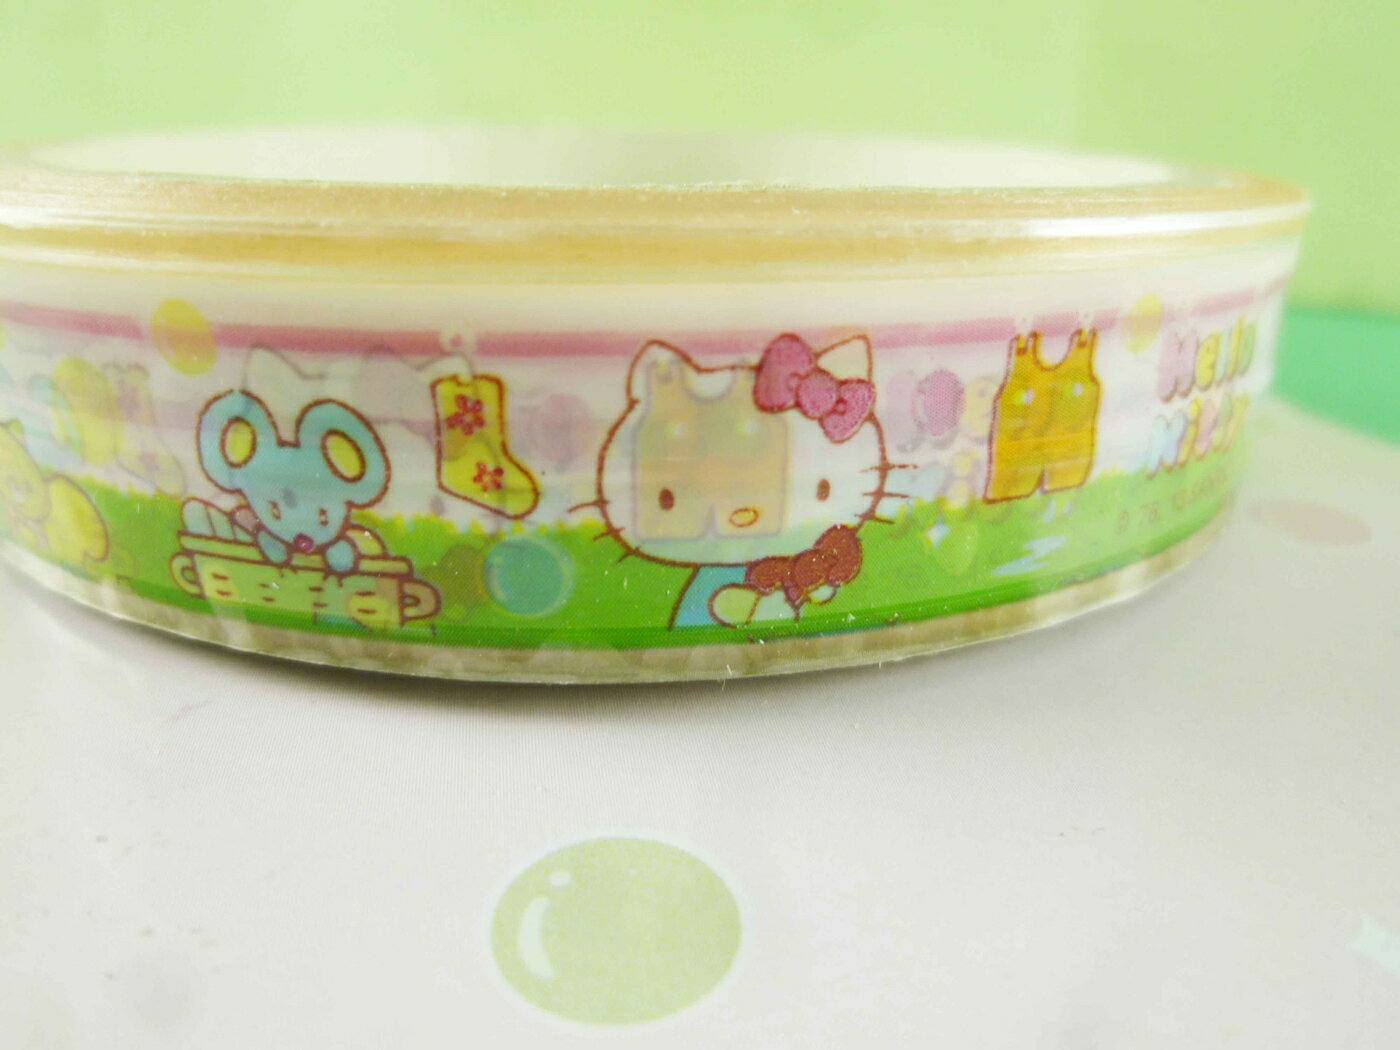 【震撼精品百貨】Hello Kitty 凱蒂貓 大膠帶-老鼠圖案-1.8CM 震撼日式精品百貨